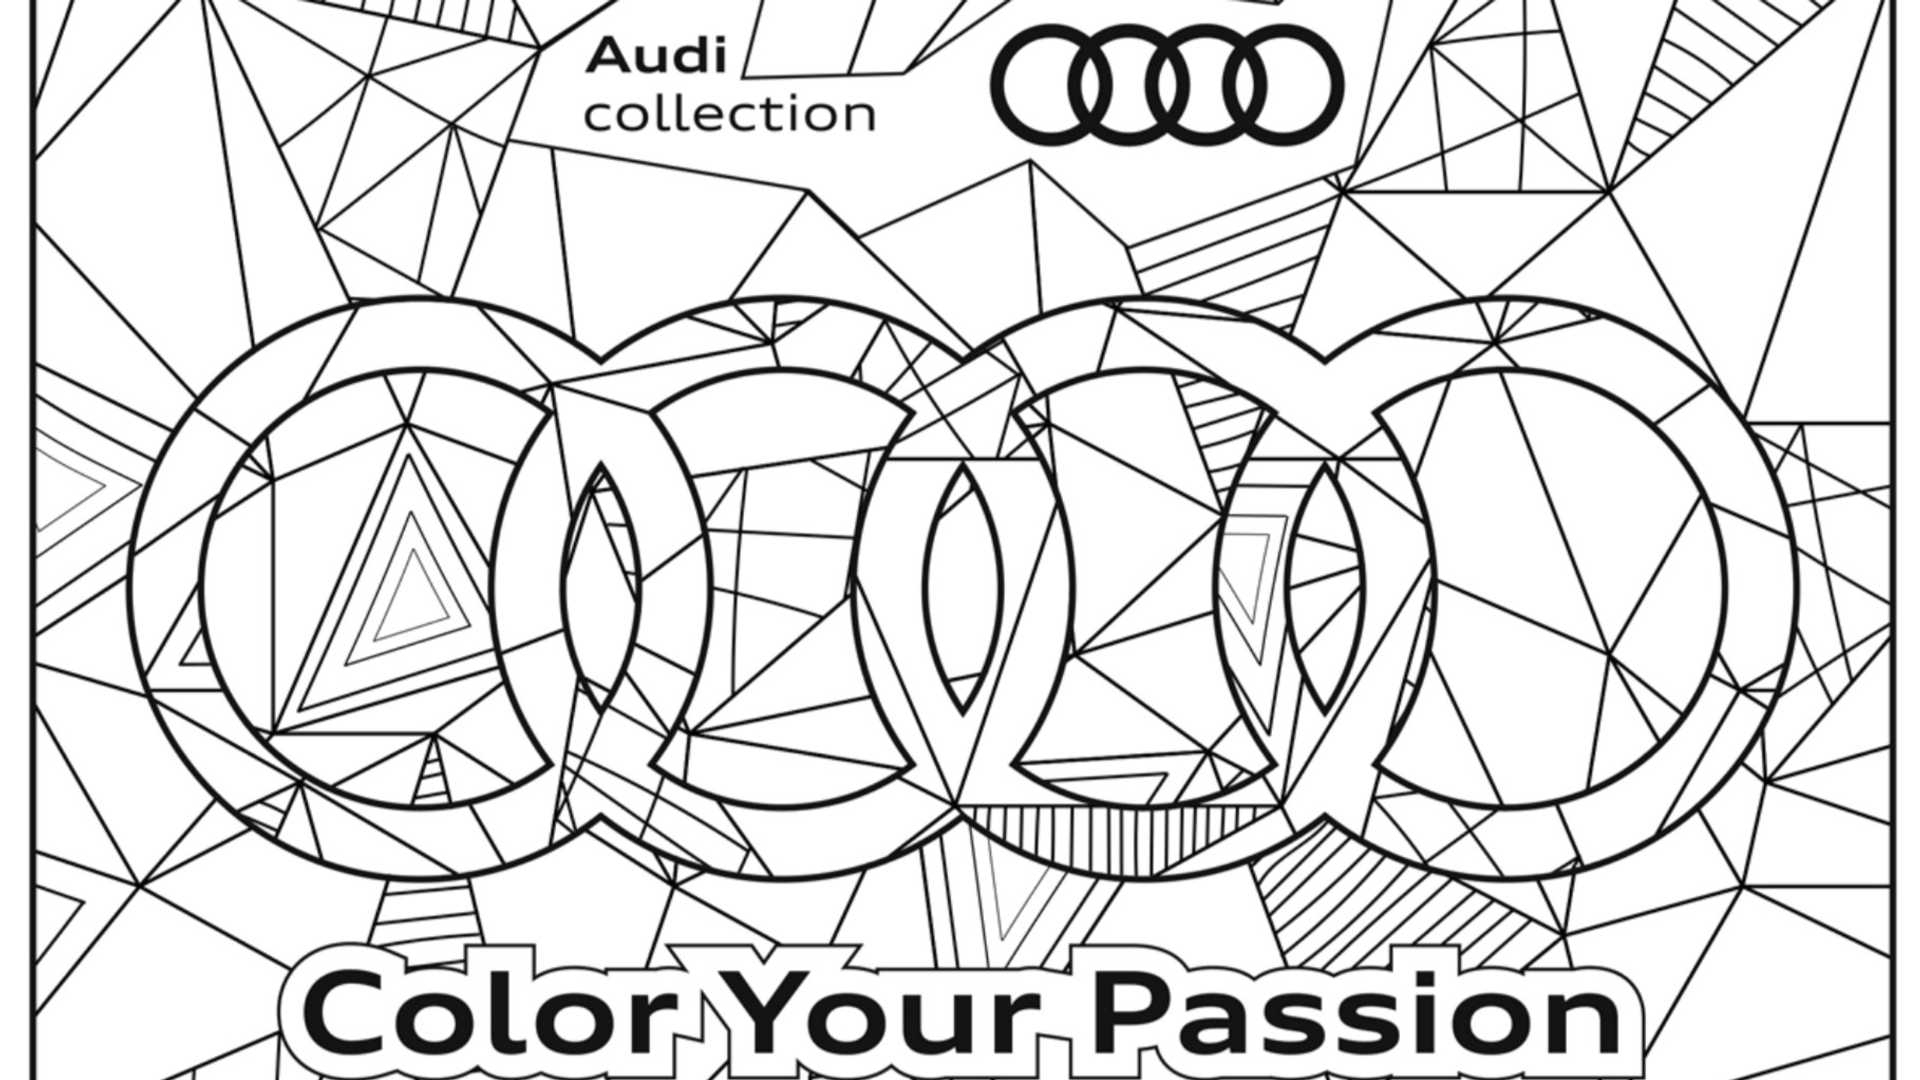 Un Cahier De Coloriage Audi À Télécharger tout Colorier Au Futur